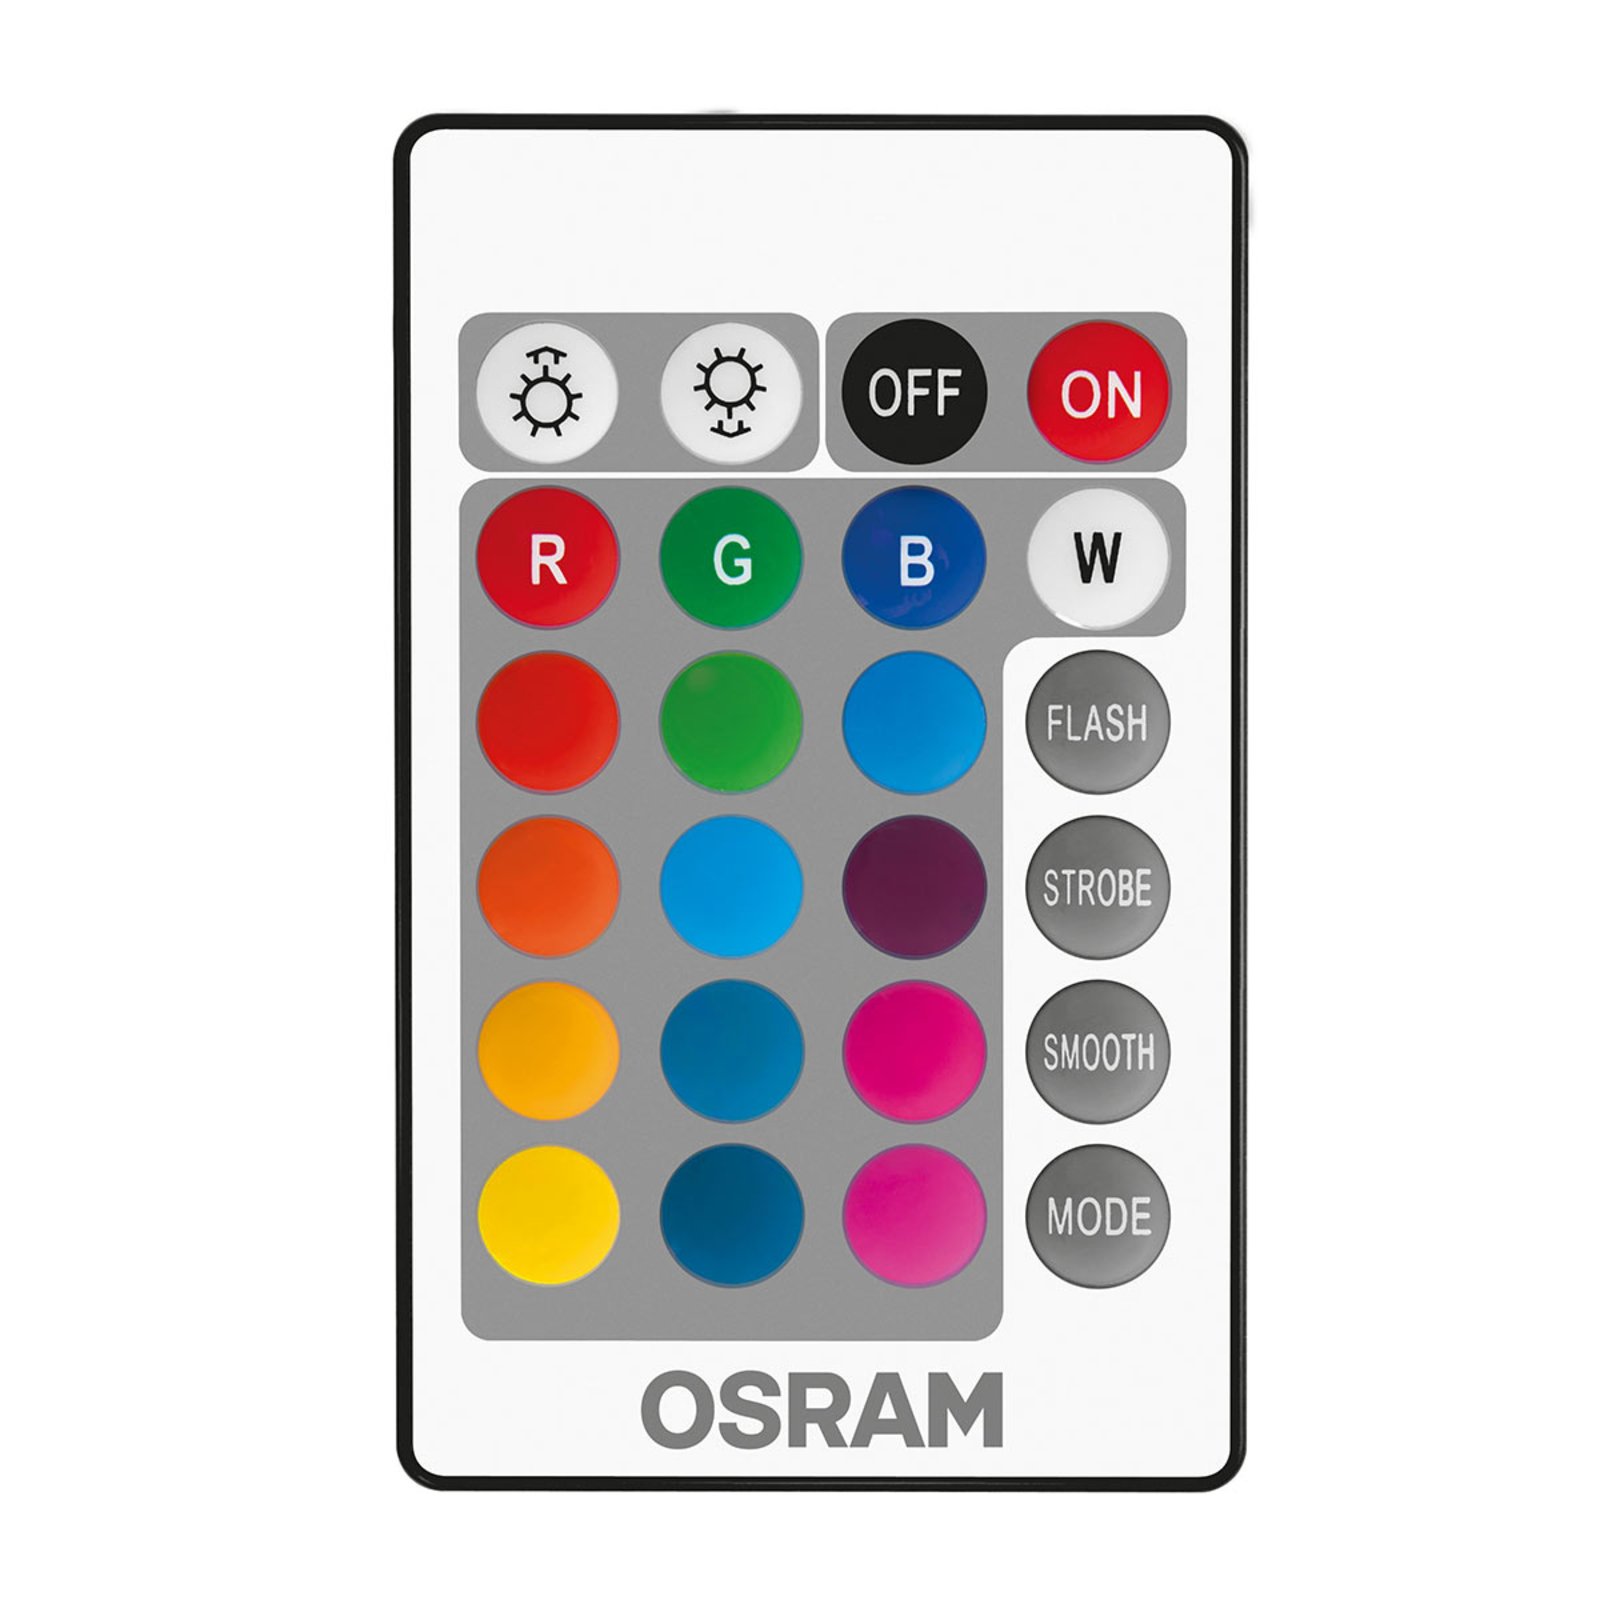 OSRAM LED lamp GU10 4 4,2W Star+ remote control